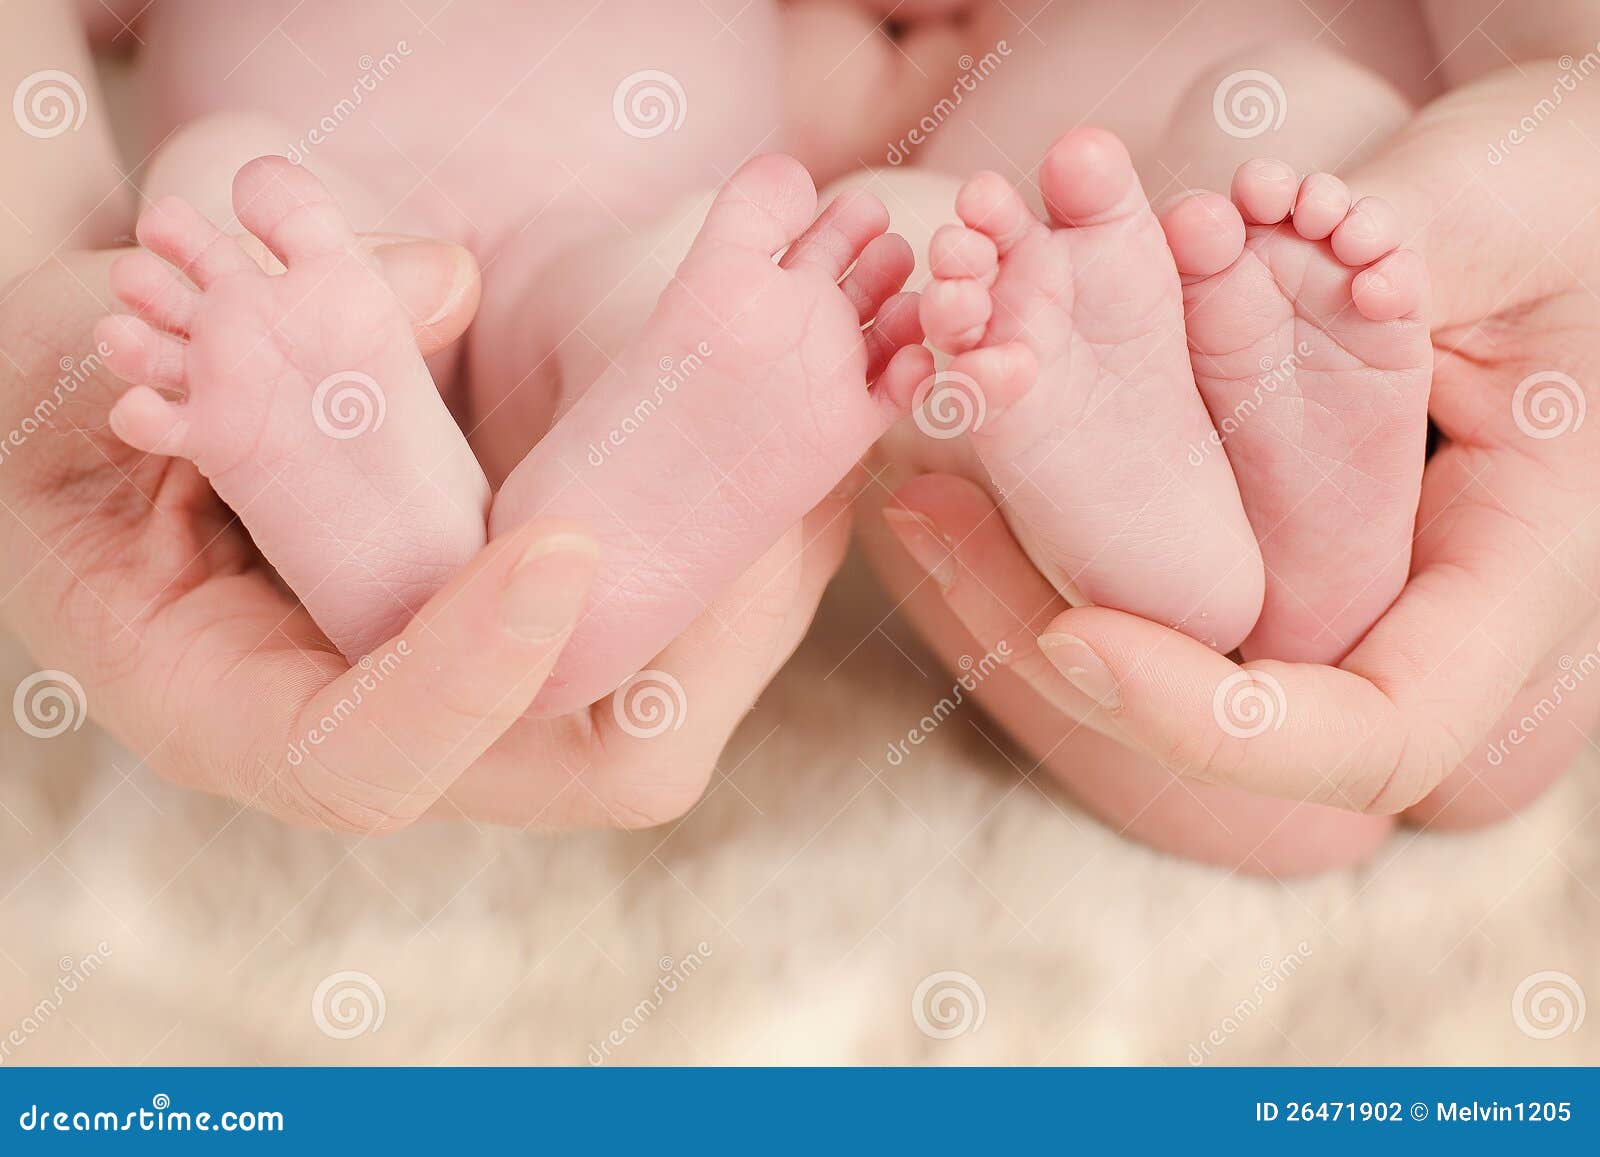 babies feet